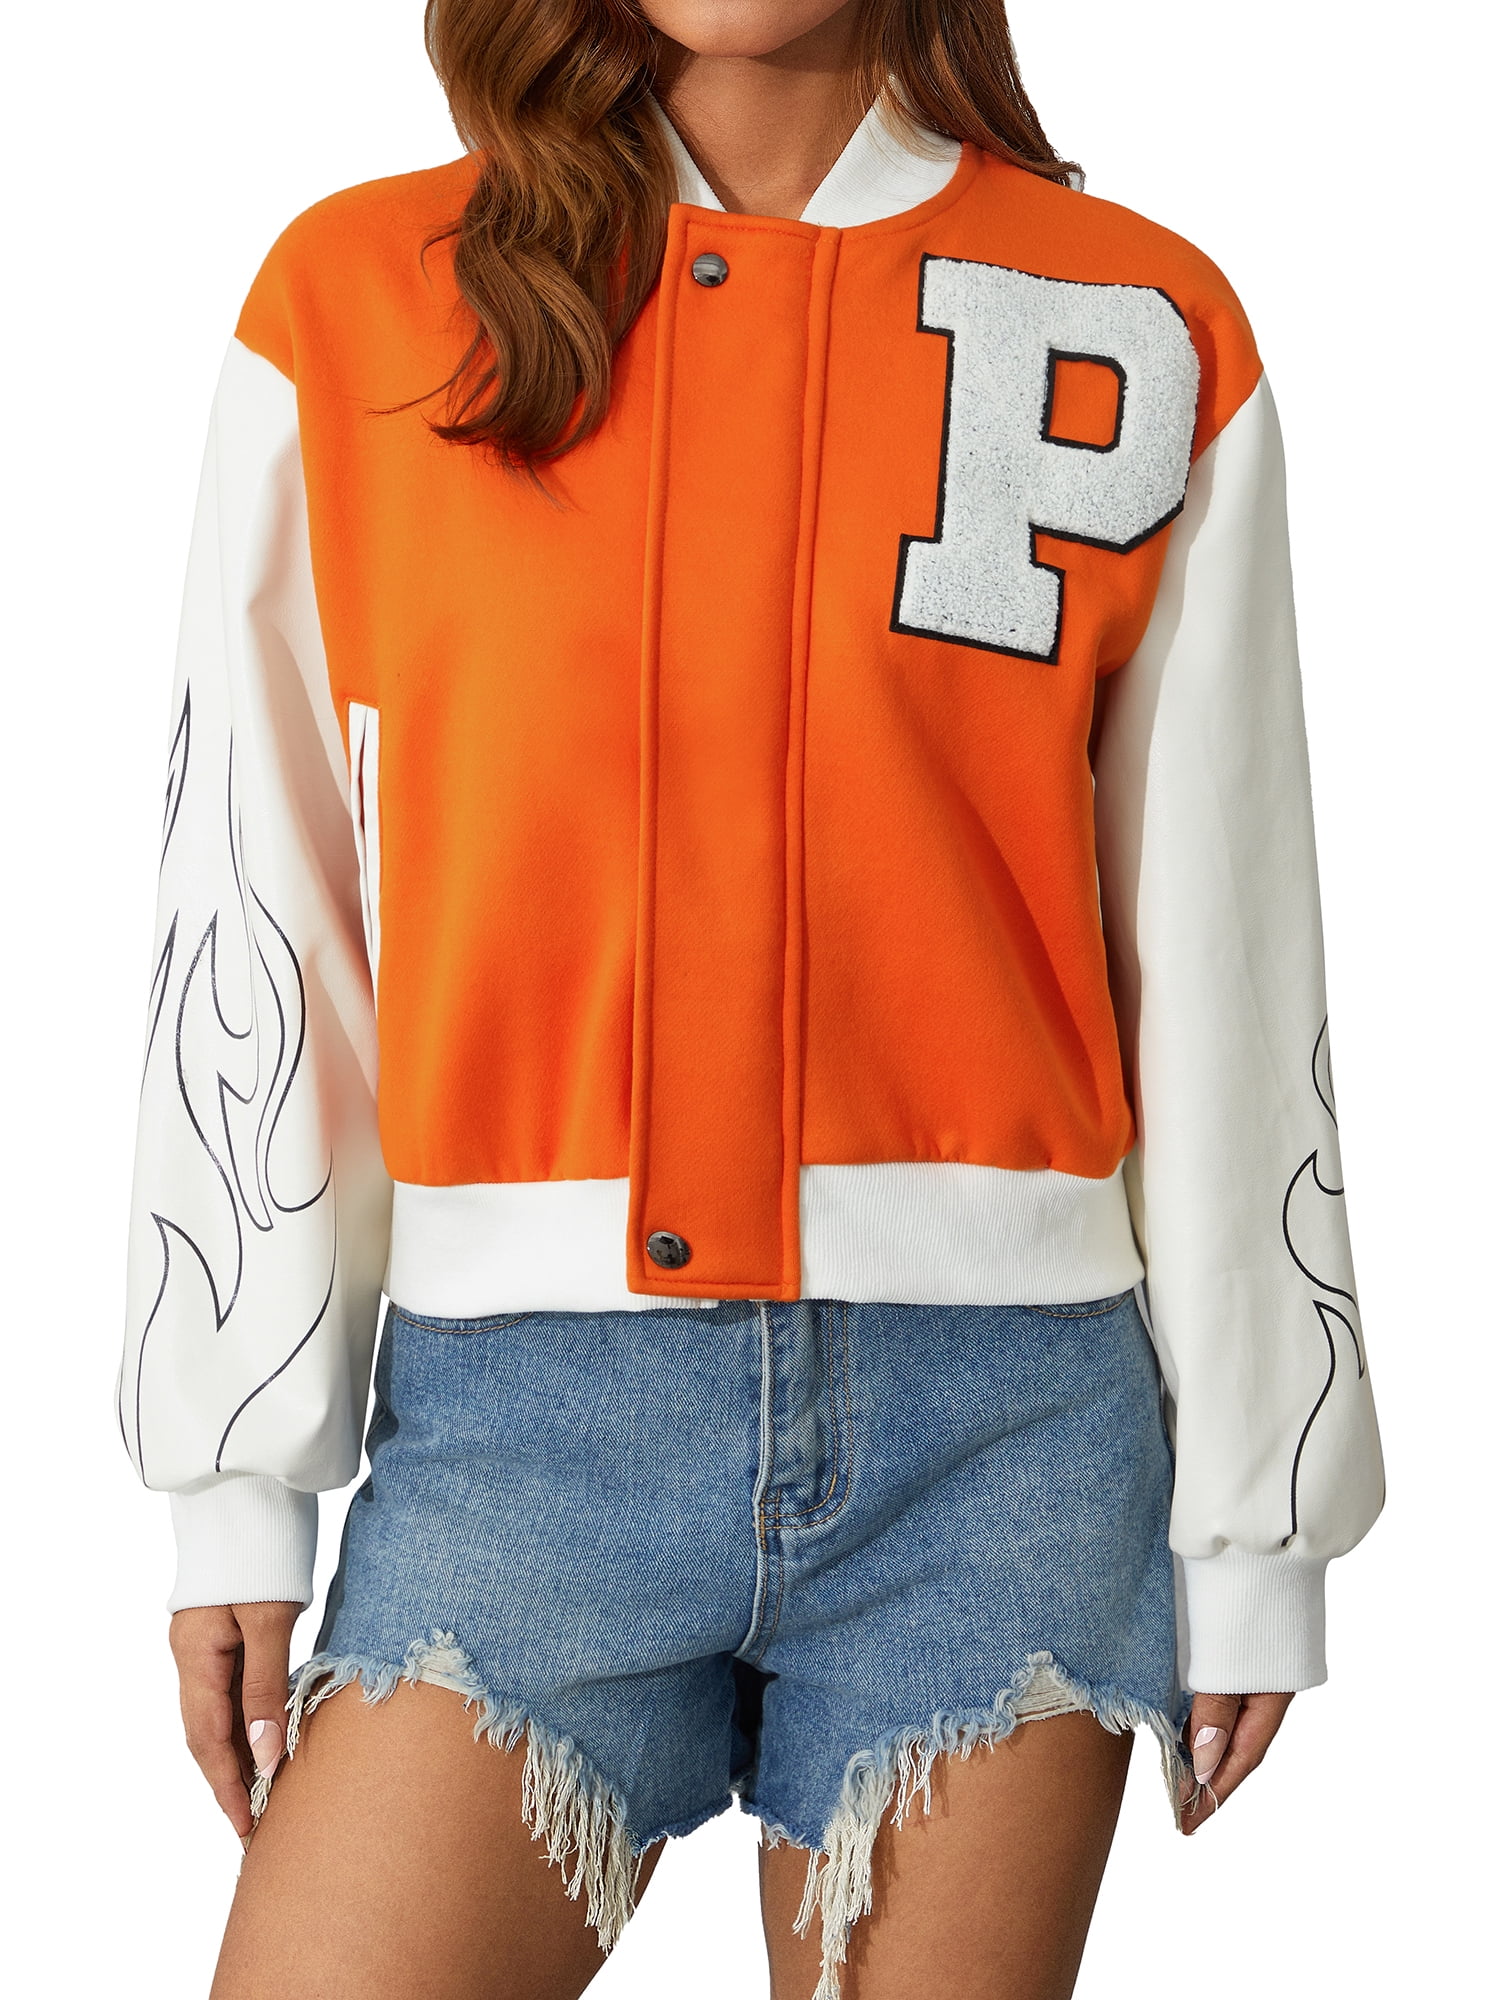 Sunisery Women Varsity Baseball Jackets Faux Leather Long Sleeve Zip Up  Cropped Bomber Jacket Coat Aesthetic Jackets Top Orange M 